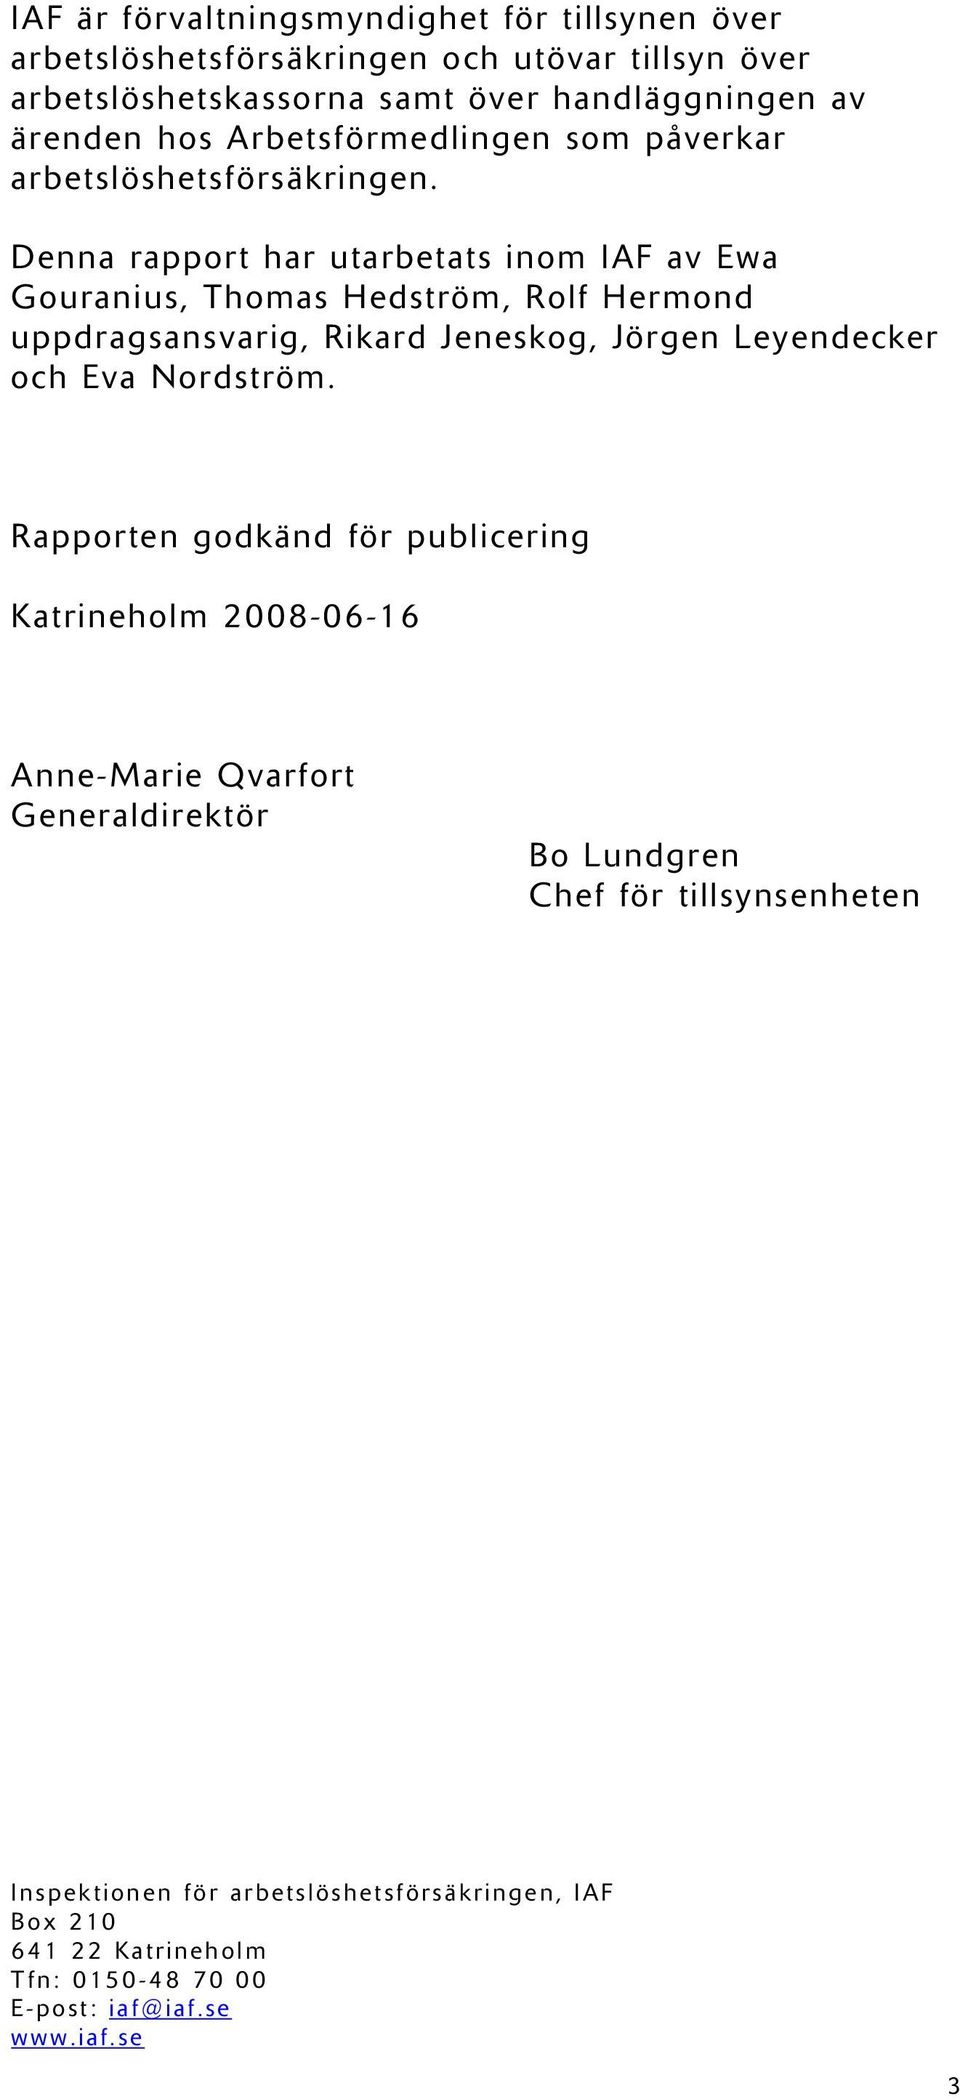 Denna rapport har utarbetats inom IAF av Ewa Gouranius, Thomas Hedström, Rolf Hermond uppdragsansvarig, Rikard Jeneskog, Jörgen Leyendecker och Eva Nordström.